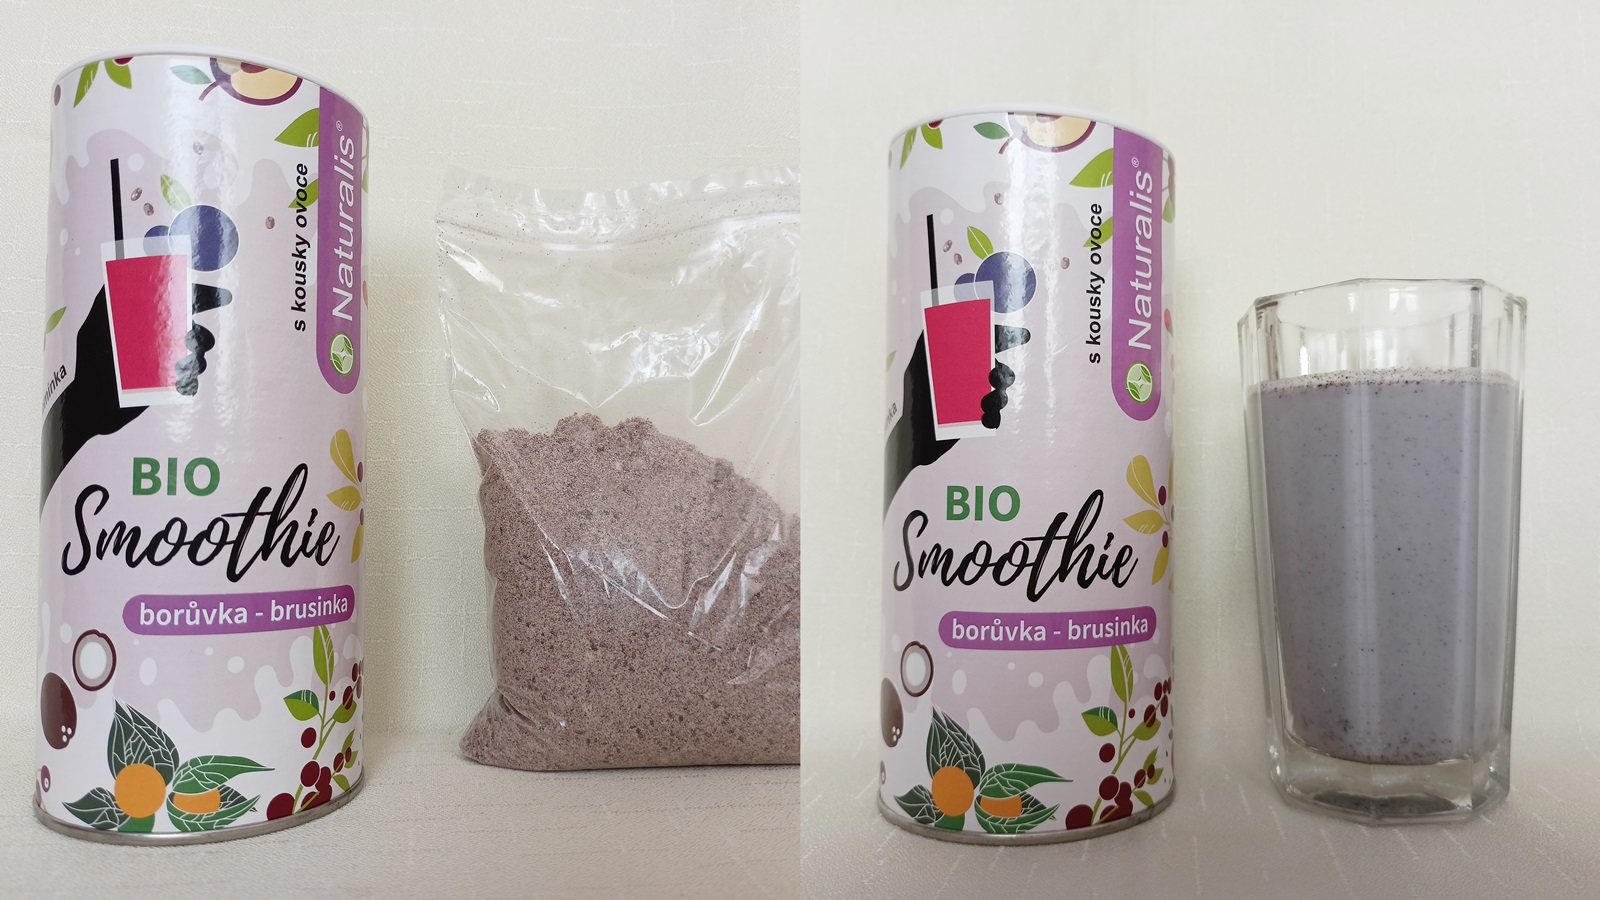 Recenze: Vyzkoušeli jsme tři nejprodávanější smoothies od Naturalis